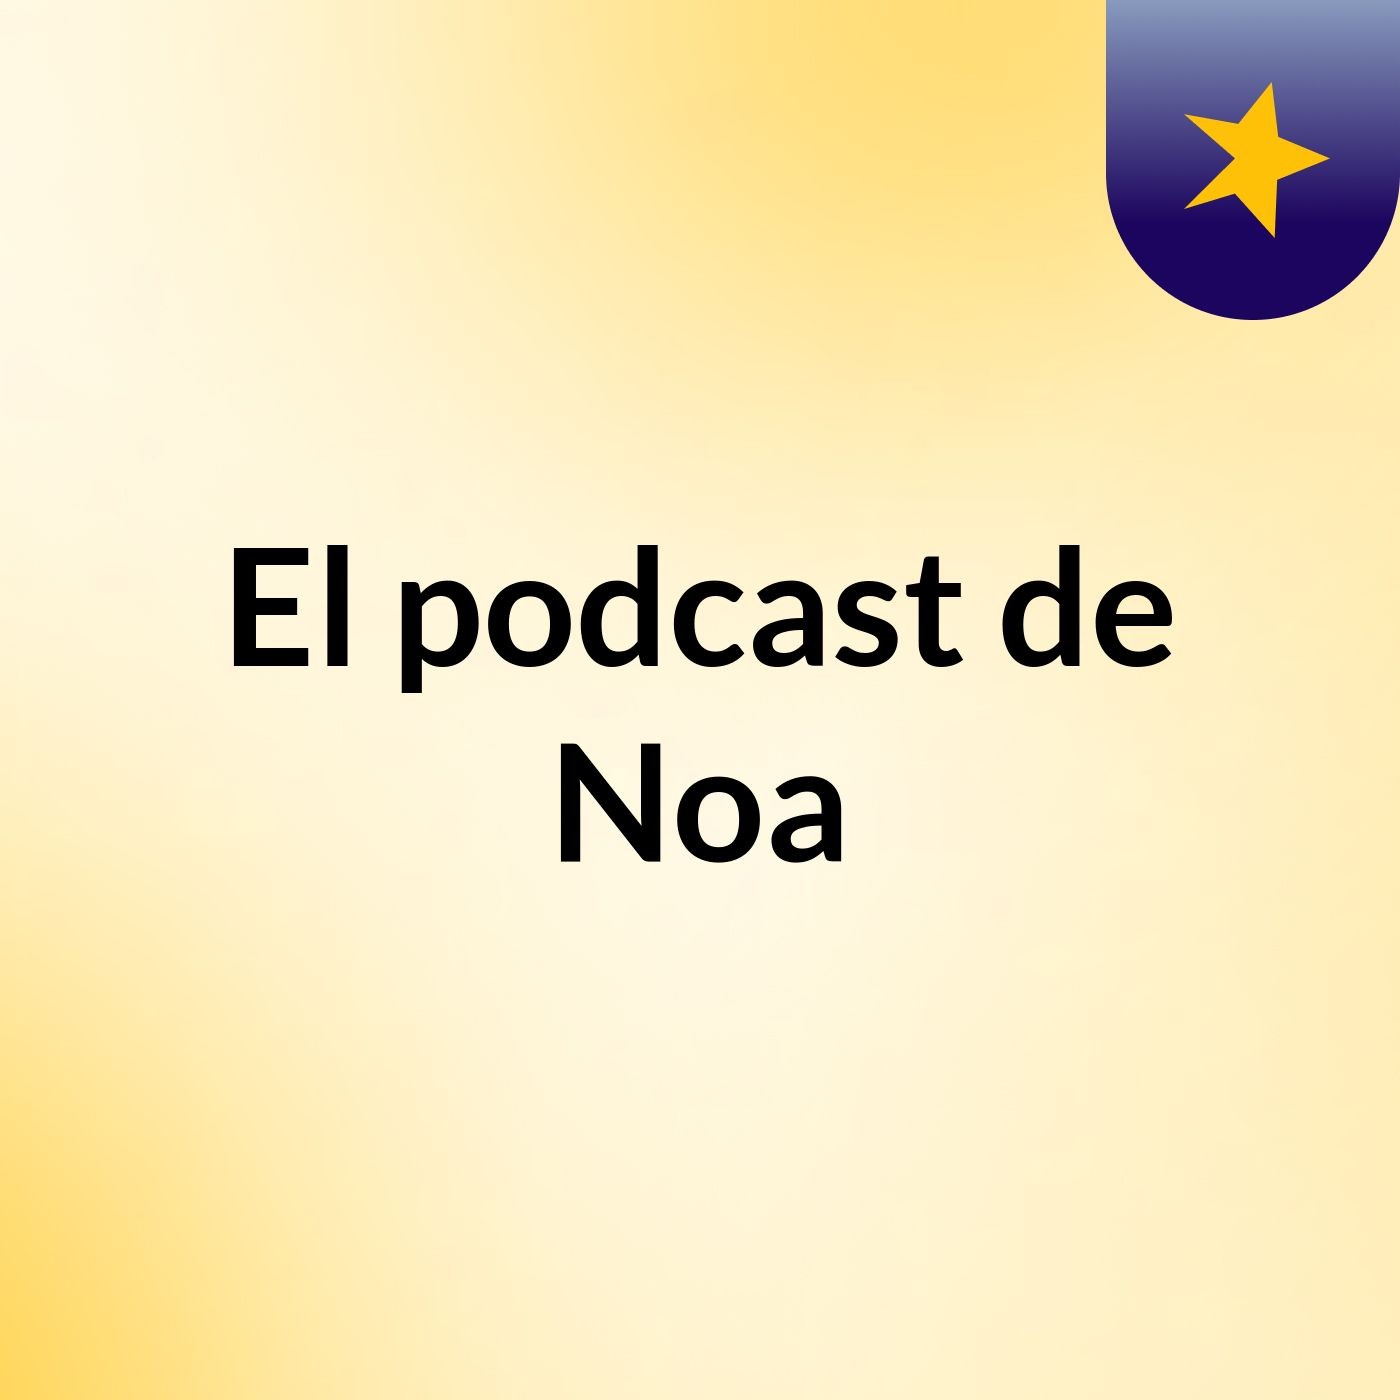 El podcast de Noa